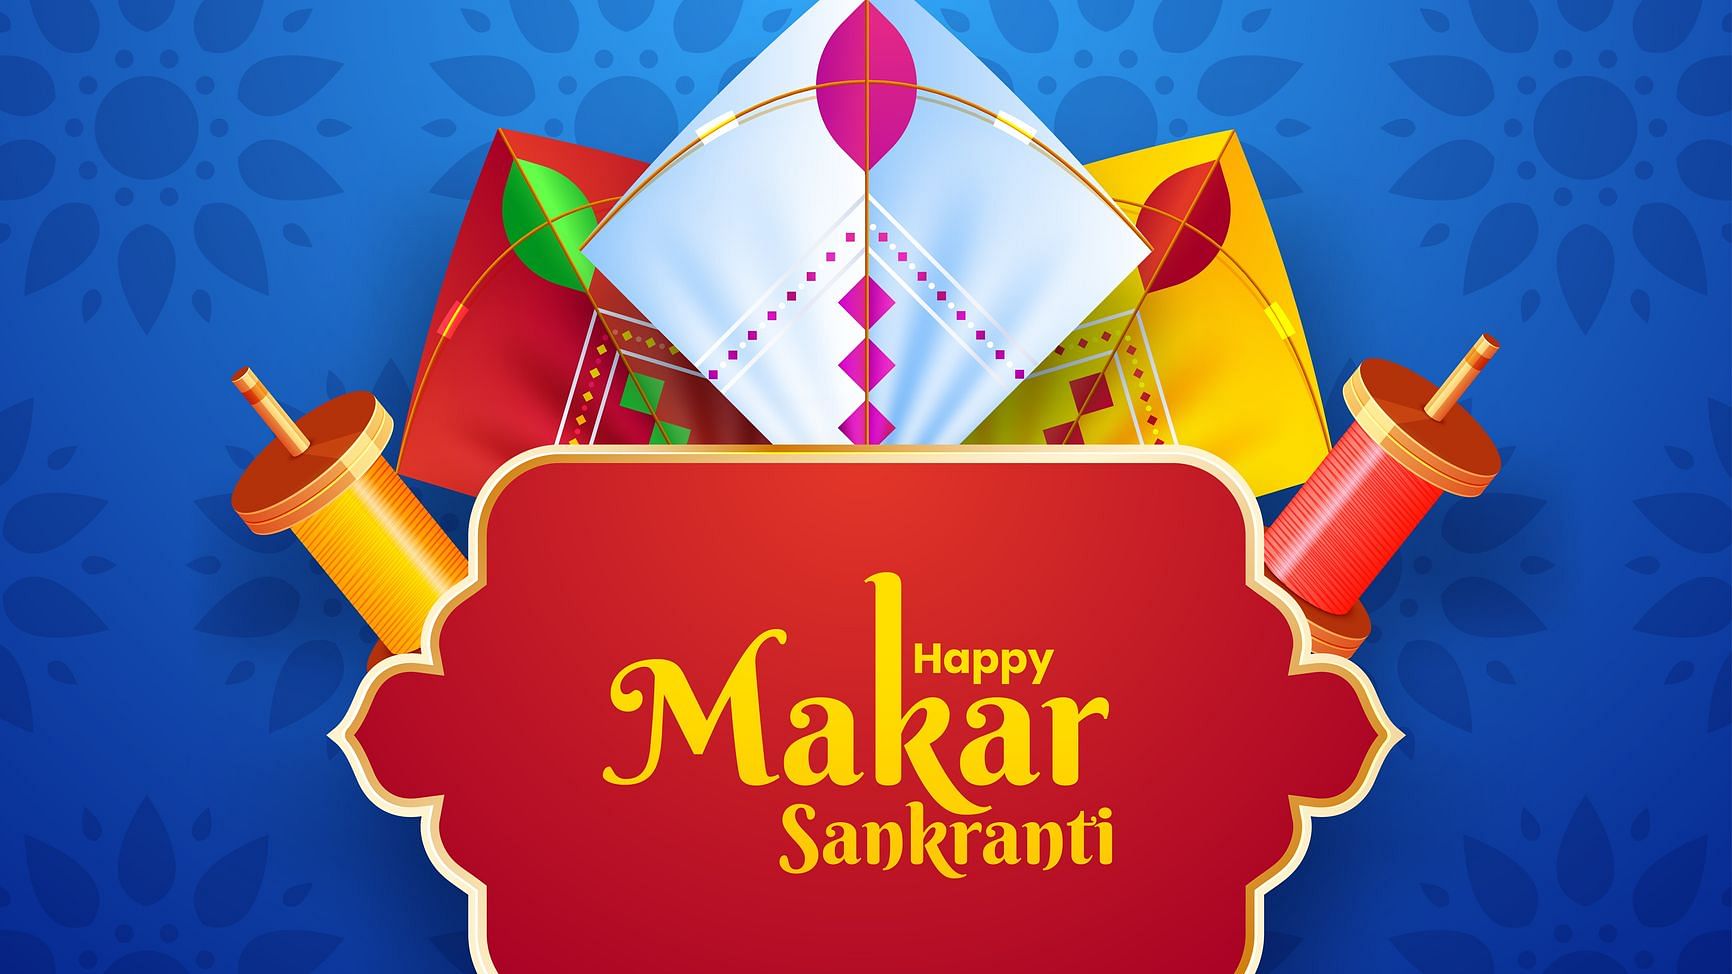 Happy Makar Sankranti 2020 Wishes, Quotes, Messages, Shayari and Status. मकर संक्रांति के लिए बेस्ट हैं ये मैसेज.